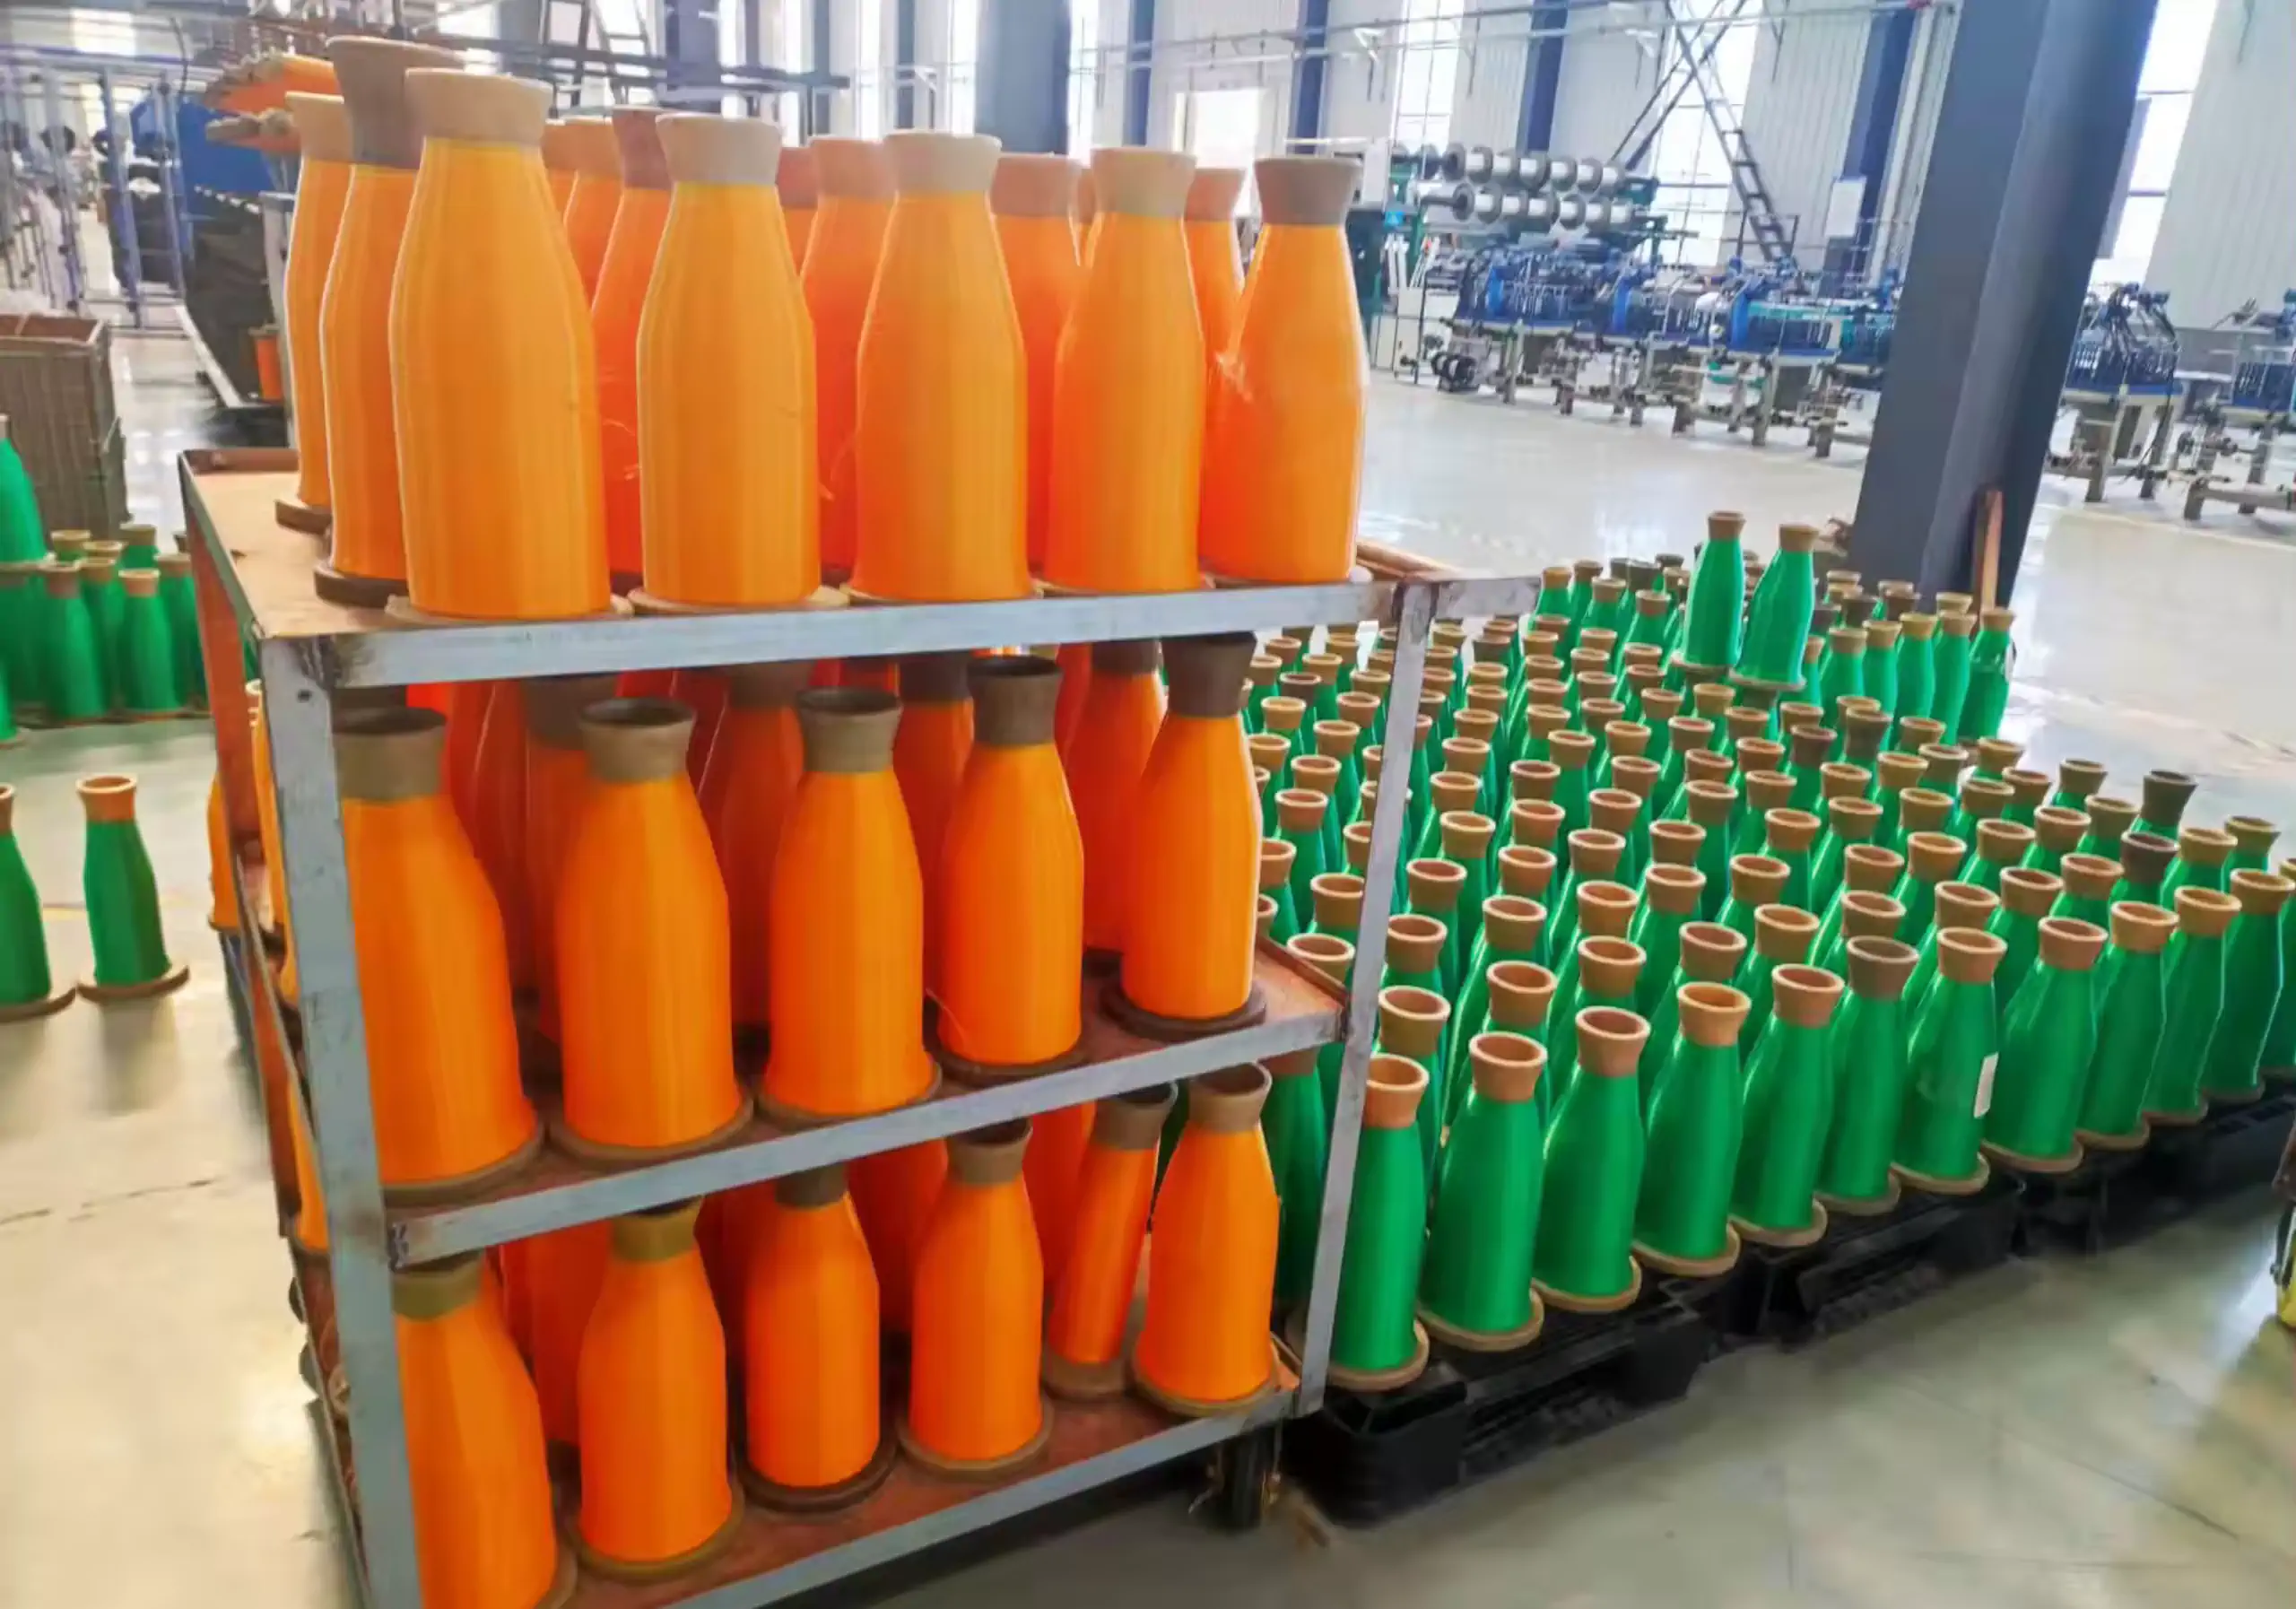 عکس نخ در محیط کارخانه به رنگ نارنجی و سبز تولید شده با خط تولید نخ پلی اتیلن